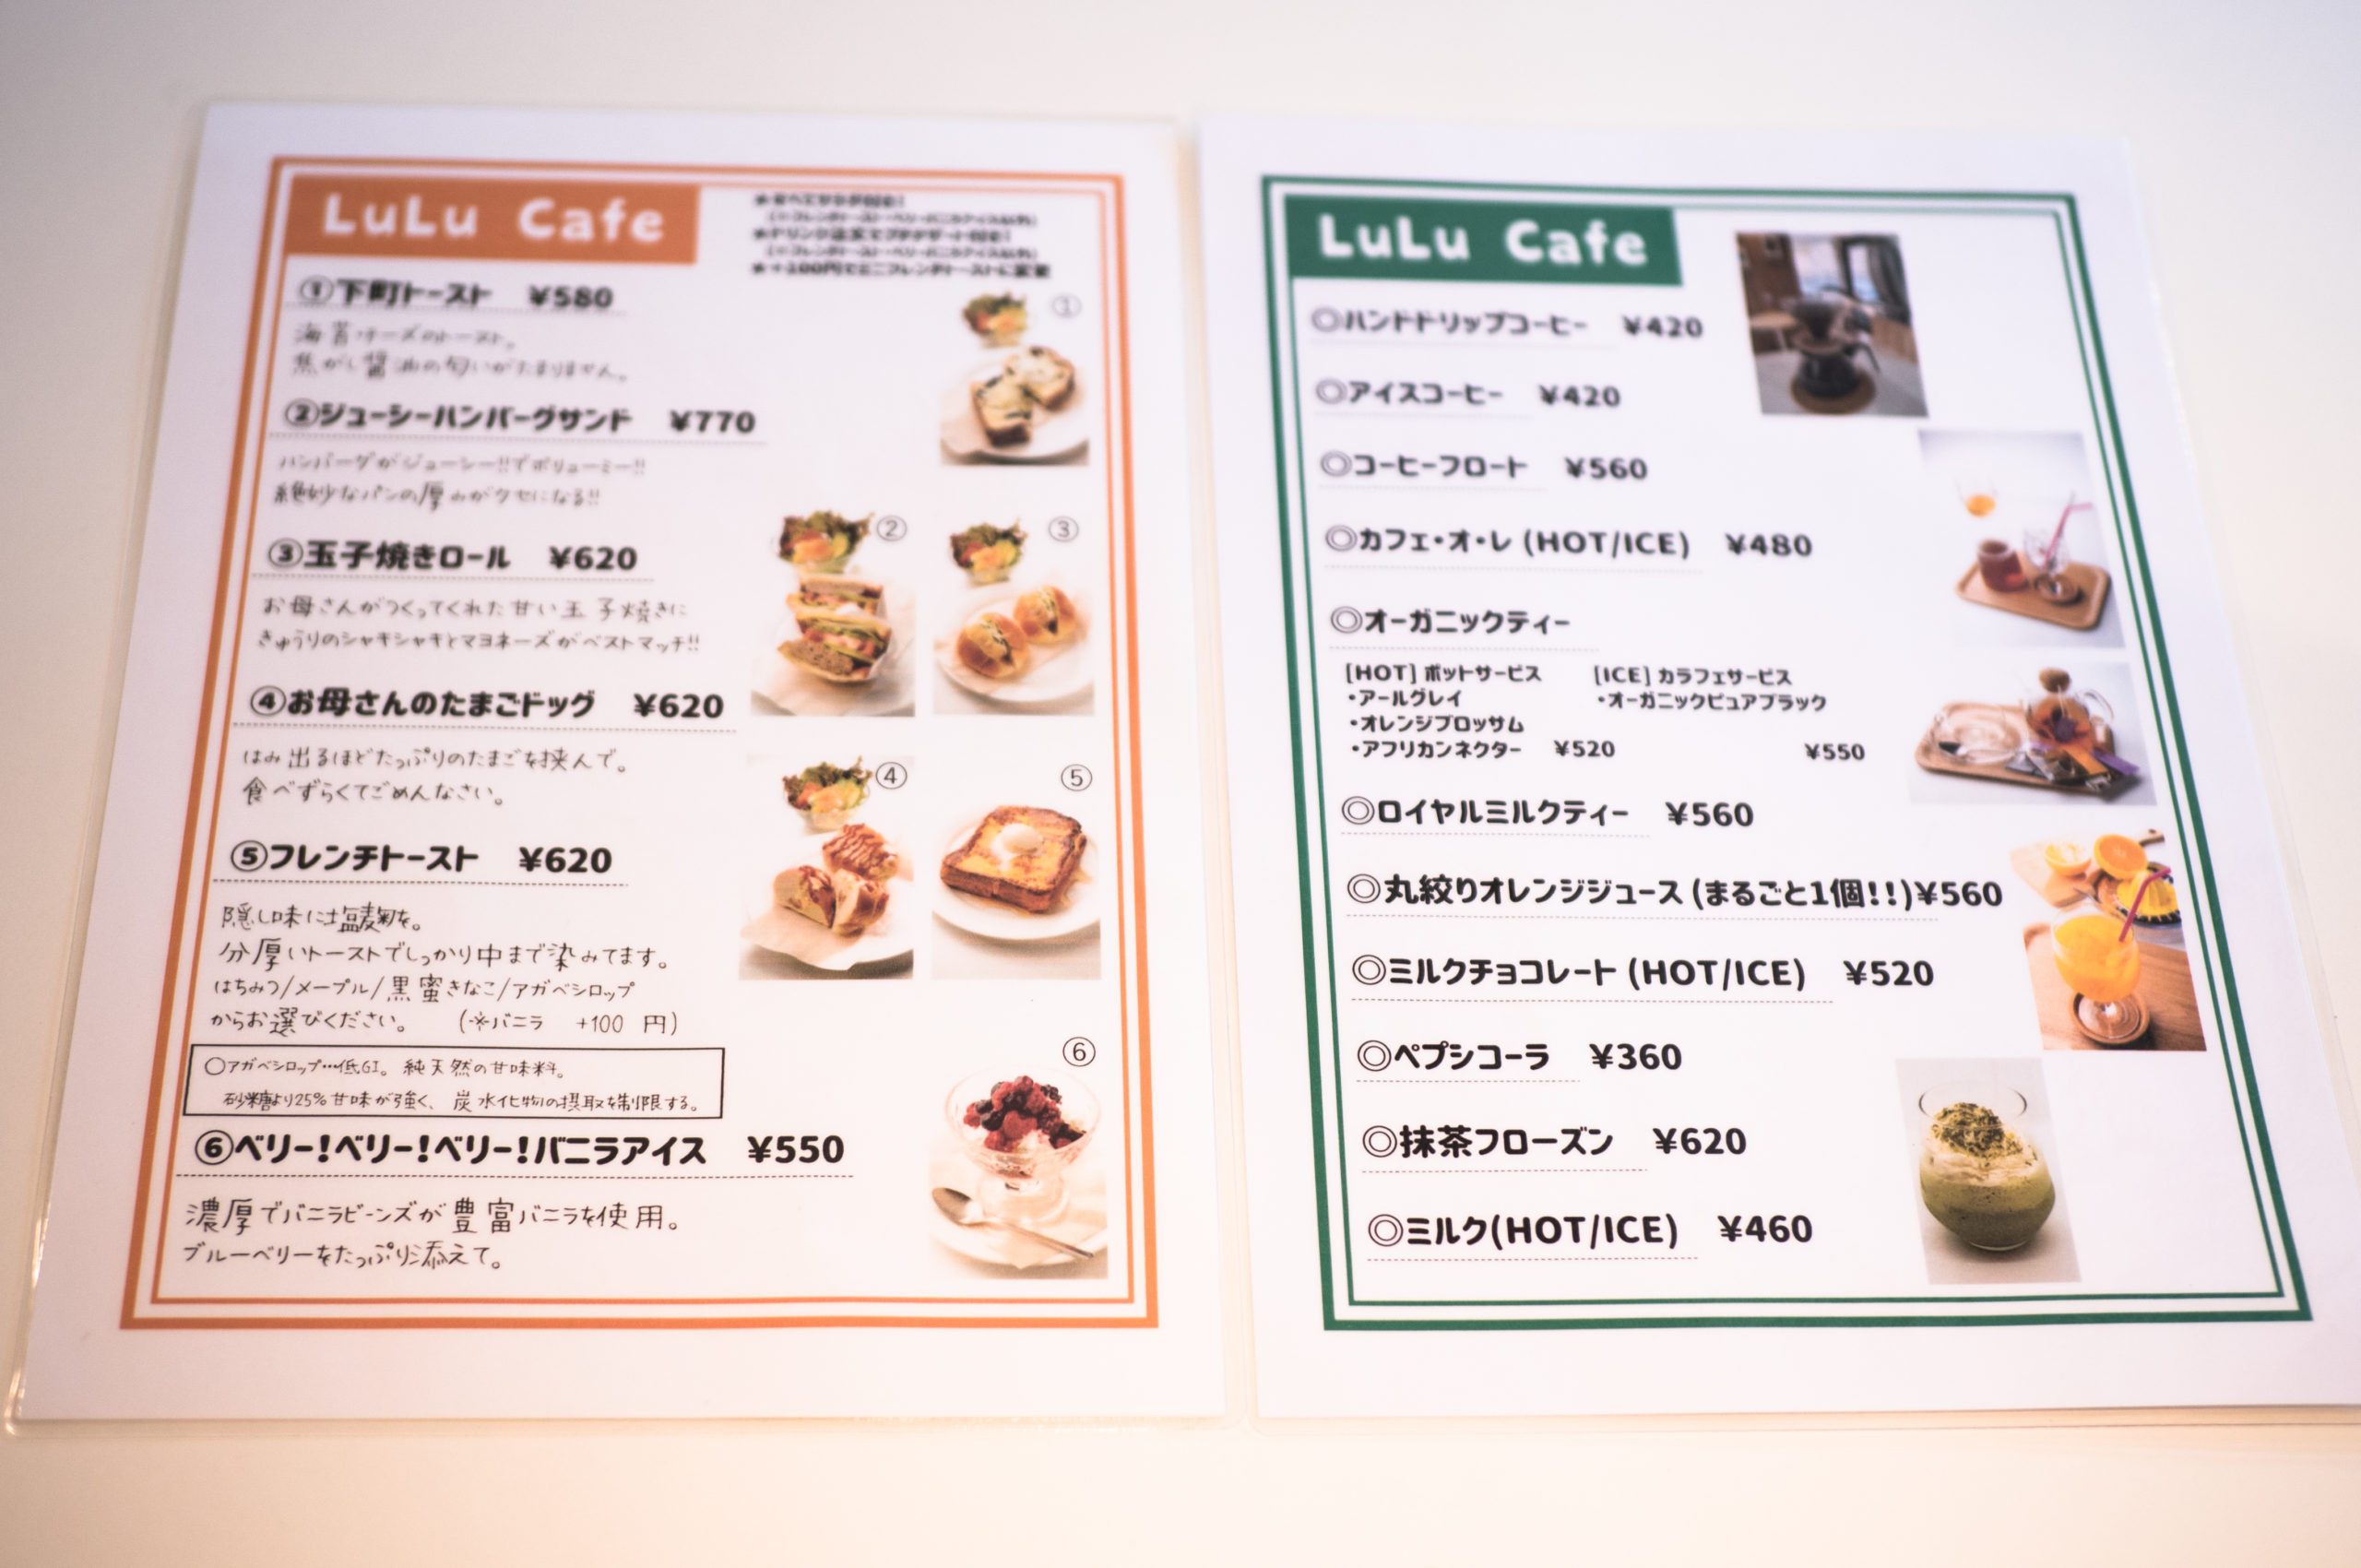 The café menu